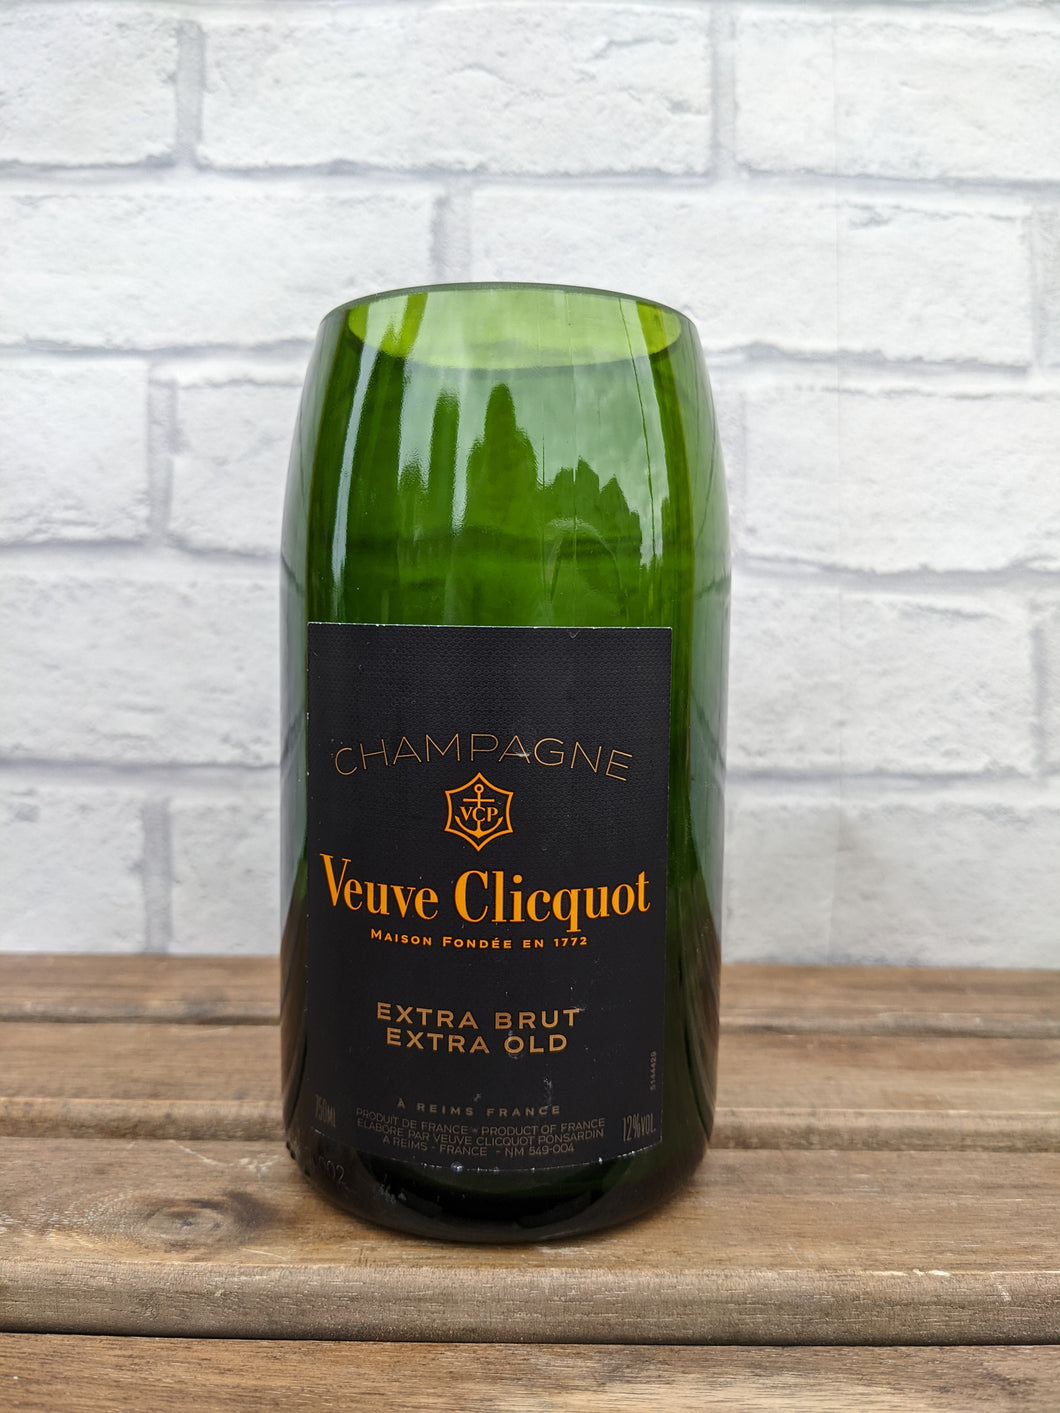 Veuve Clicquot champagne bottle vase